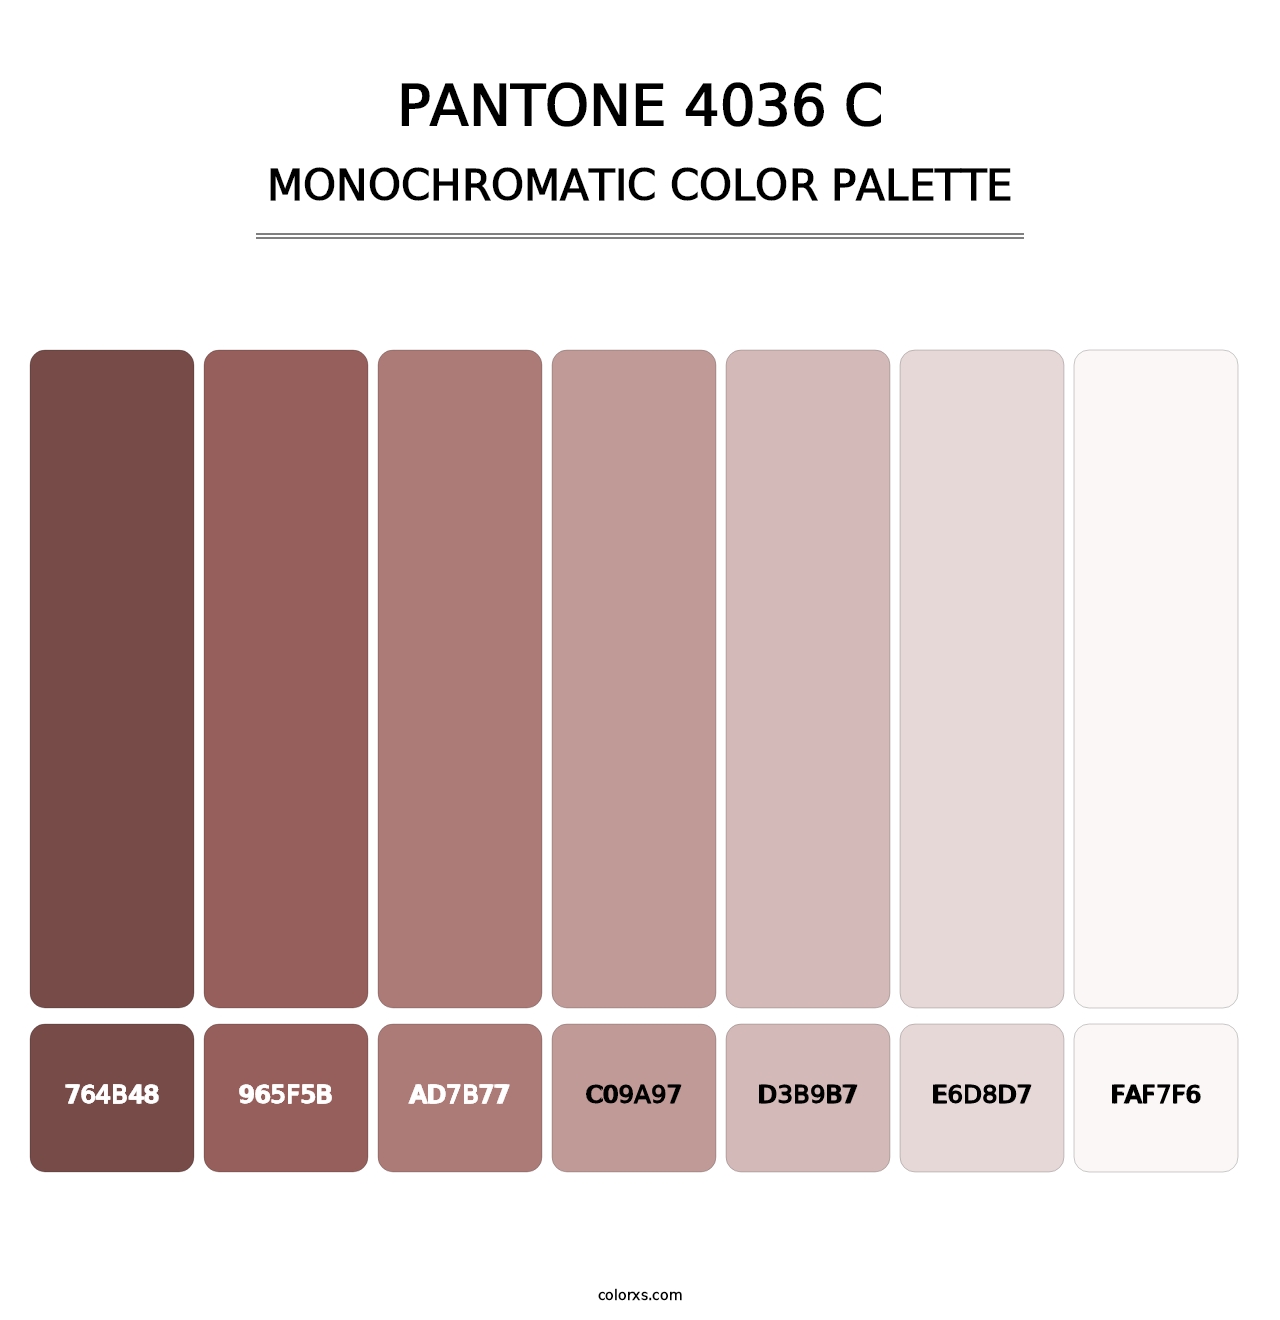 PANTONE 4036 C - Monochromatic Color Palette